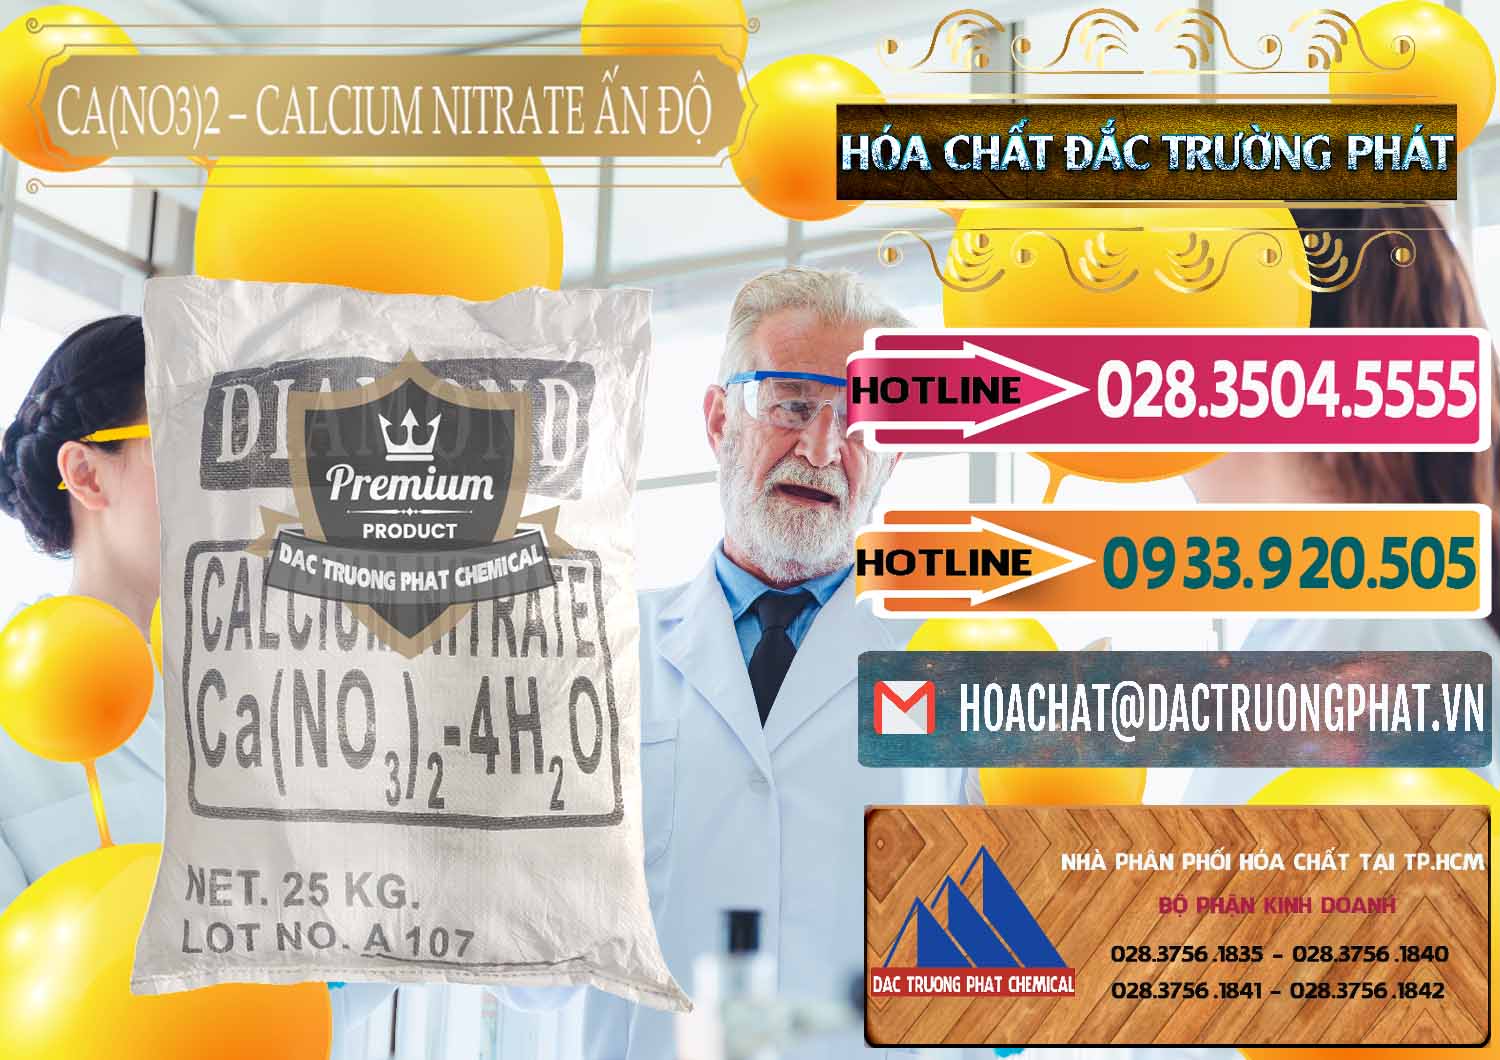 Đơn vị chuyên kinh doanh và bán CA(NO3)2 – Calcium Nitrate Ấn Độ India - 0038 - Công ty cung cấp và phân phối hóa chất tại TP.HCM - dactruongphat.vn